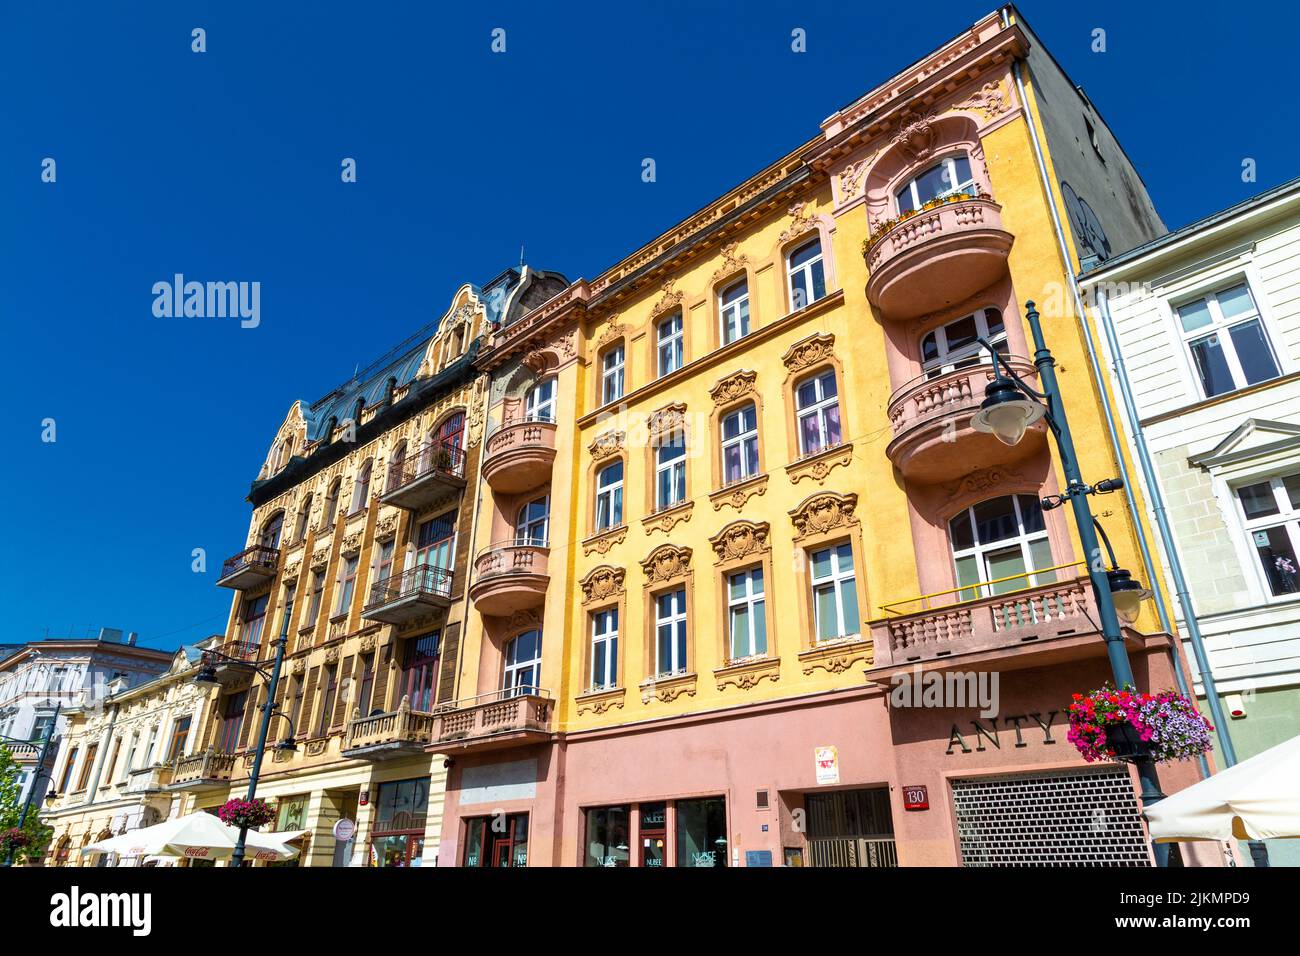 Colourful, ornate art nouveau tenement houses on Piotrkoswska Street, Lodz, Poland Stock Photo